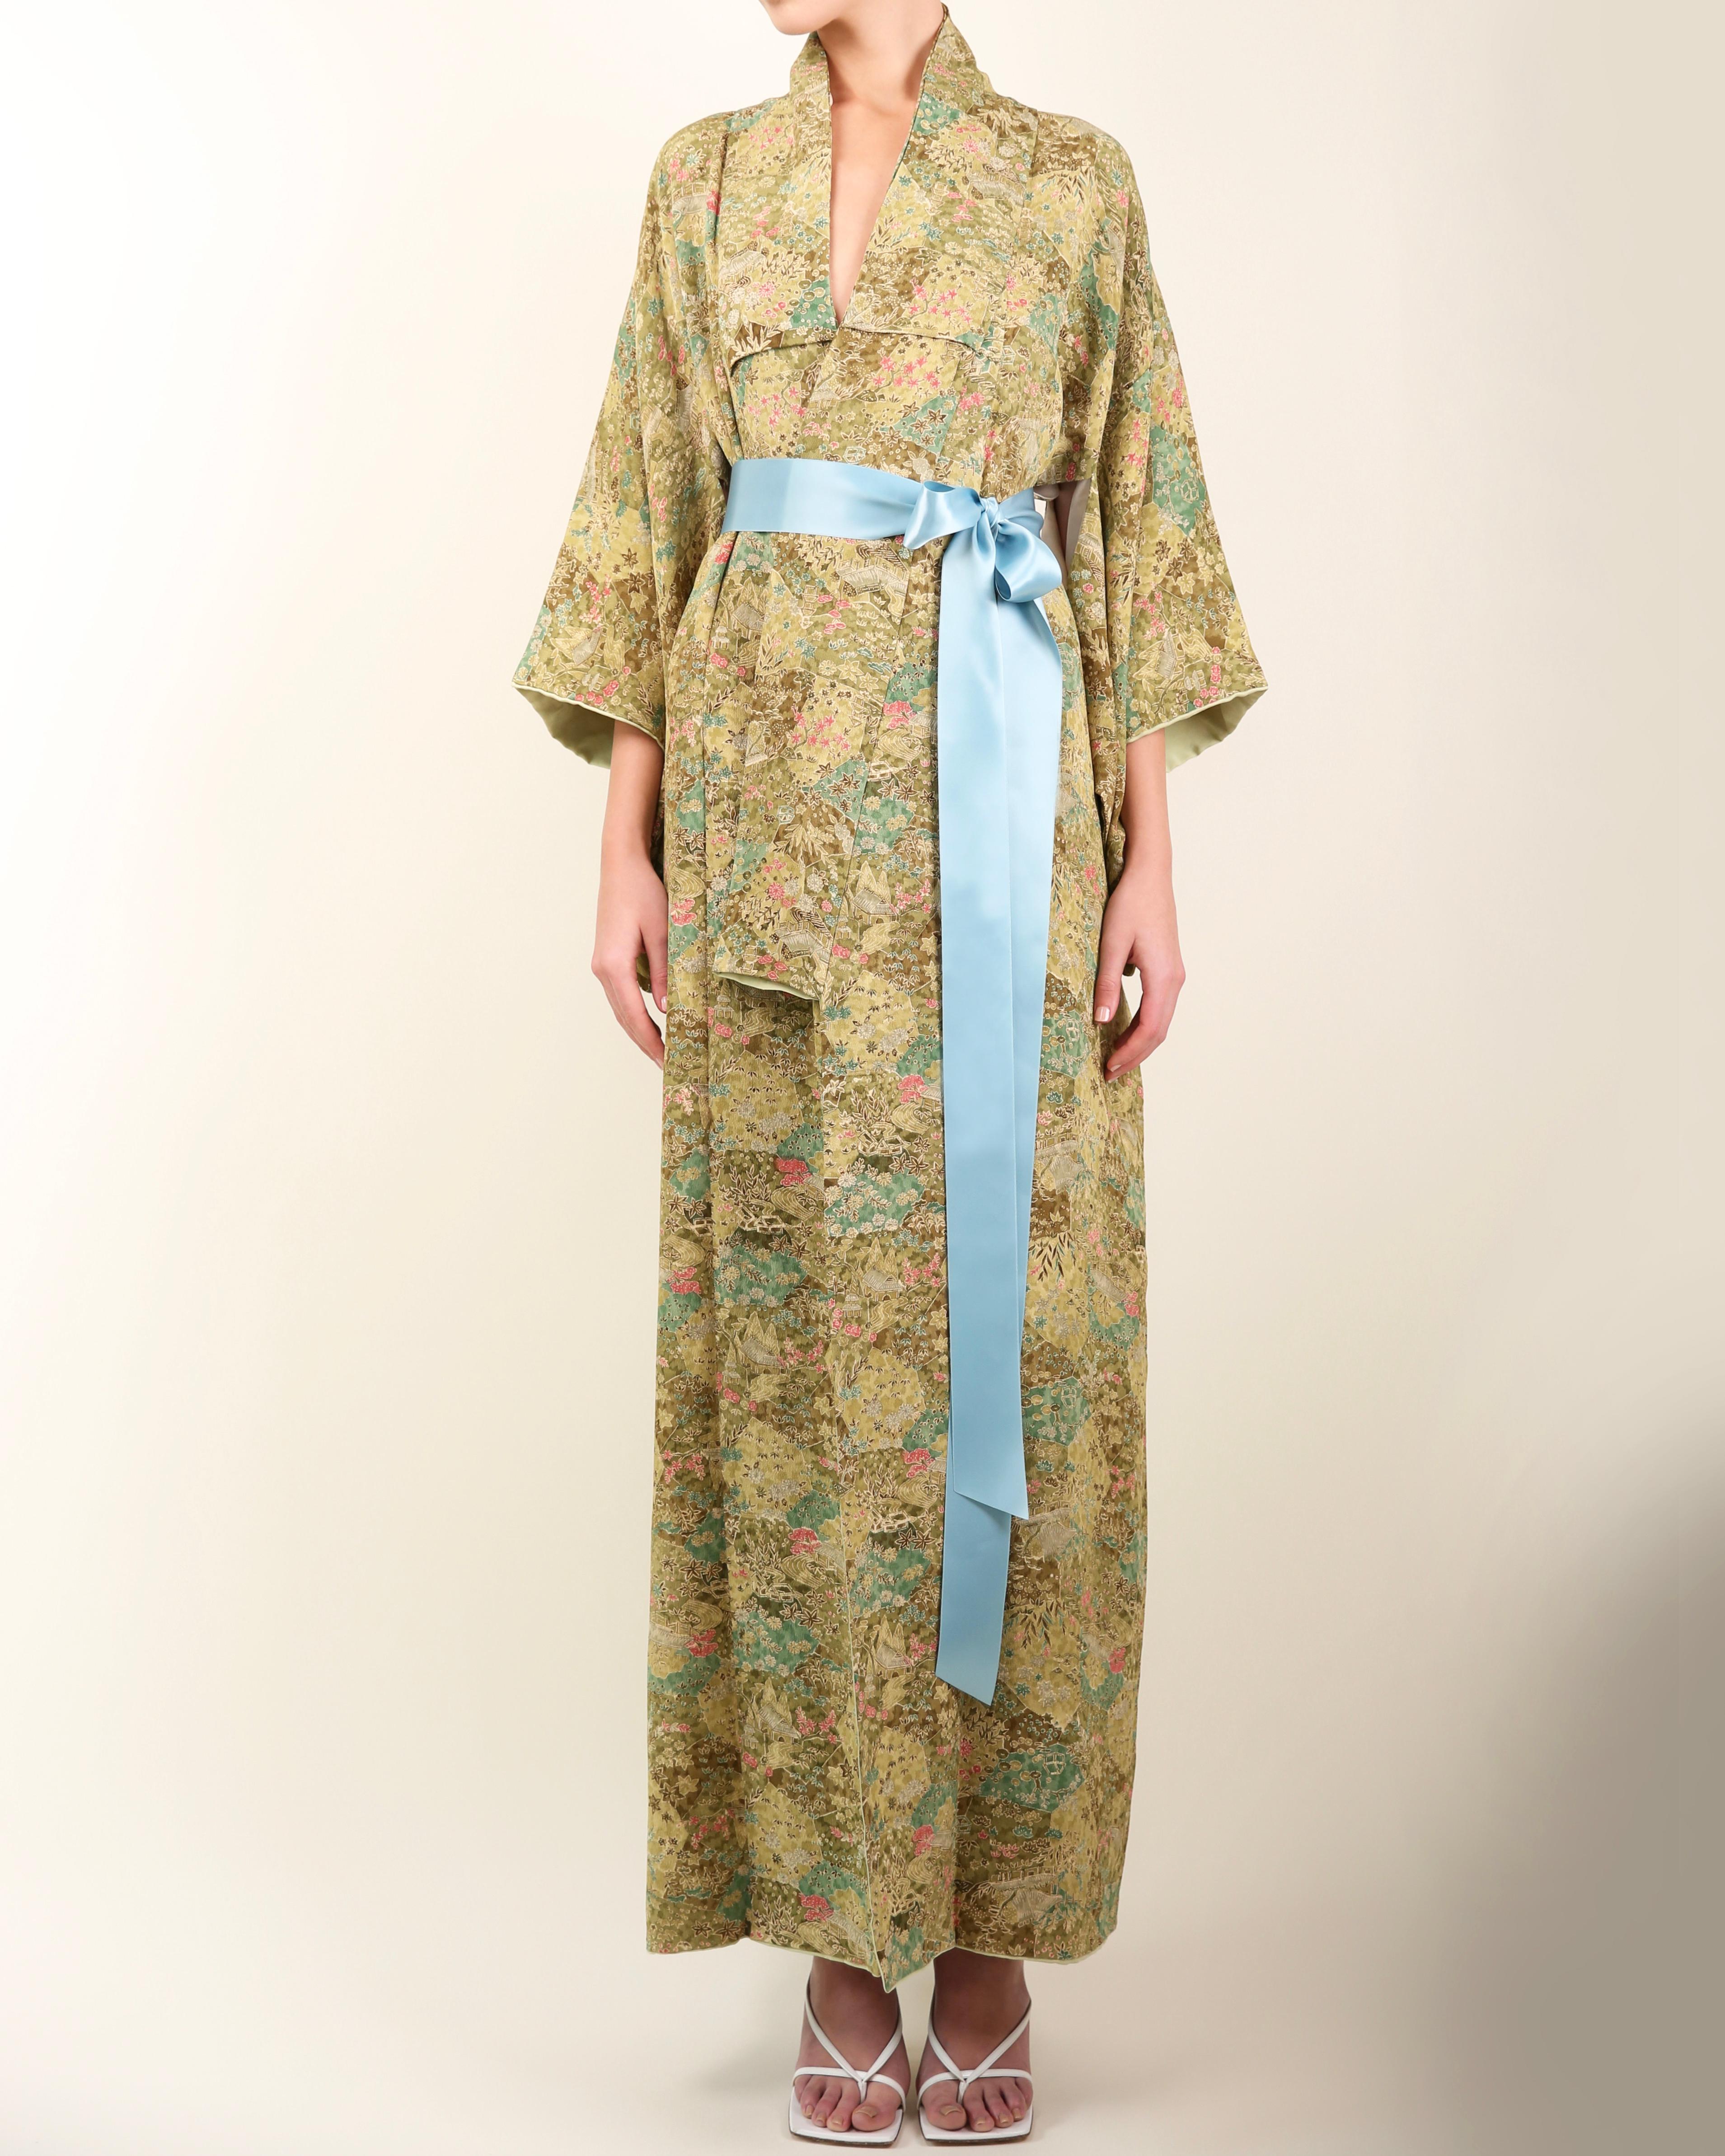 Japanischer Vintage-Kimono
Handgefertigt in Japan 
Bodenlänge
Unterschiedliche Grüntöne gemischt mit Hellgrau und Rosa
Floraler Druck im Gartenstil
Kommt mit einem hellblauen Seidenband, das Ihnen die Möglichkeit gibt, dies offen oder geschlossen zu